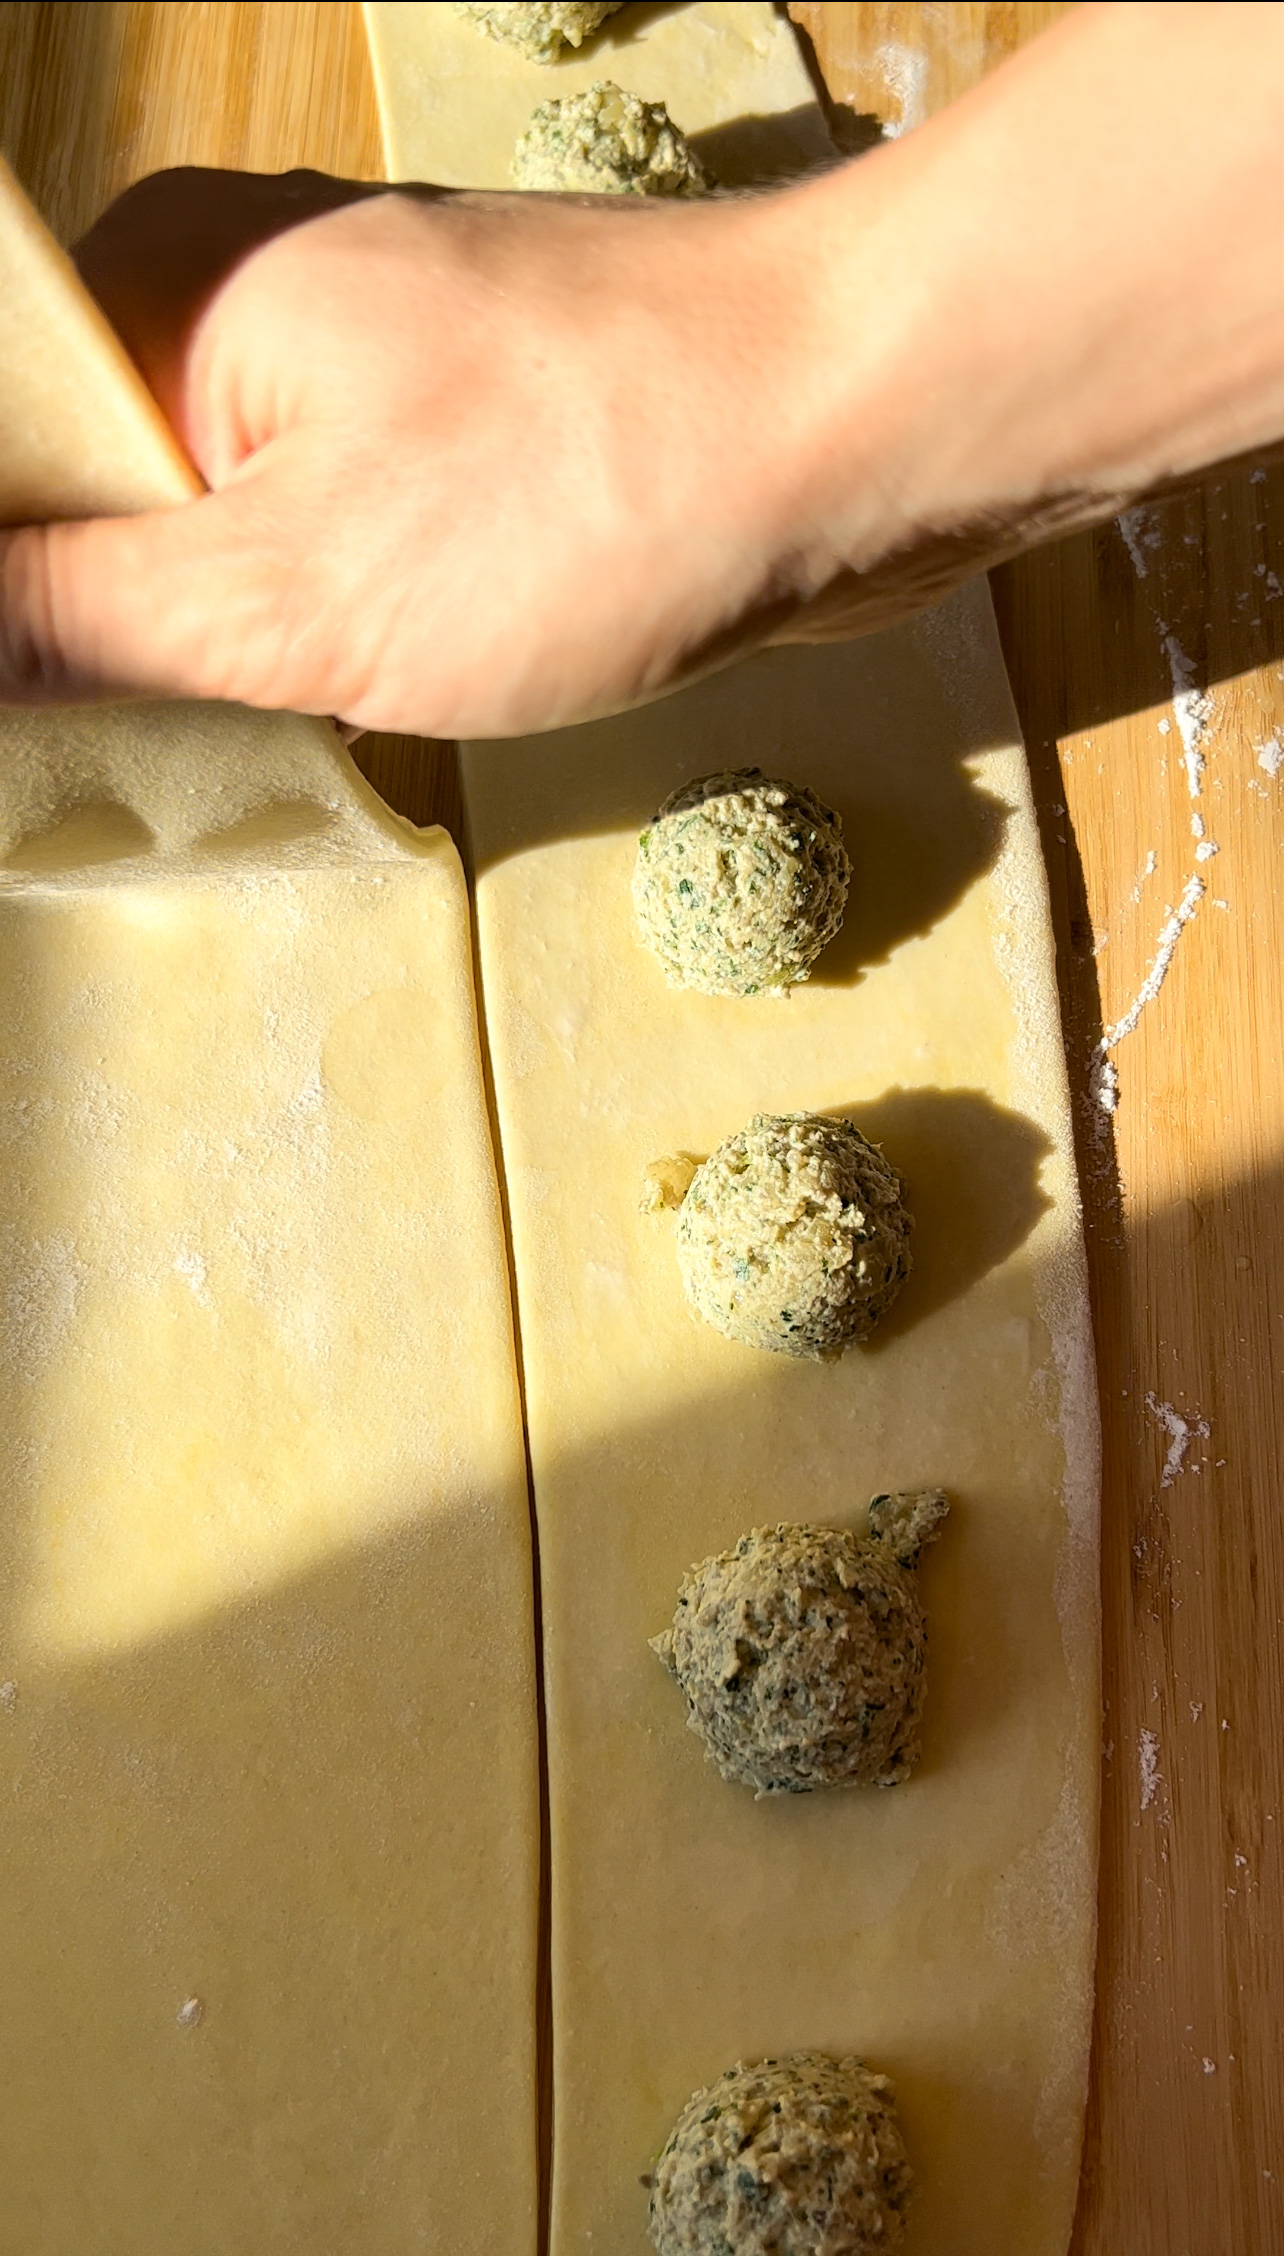 making ravioli